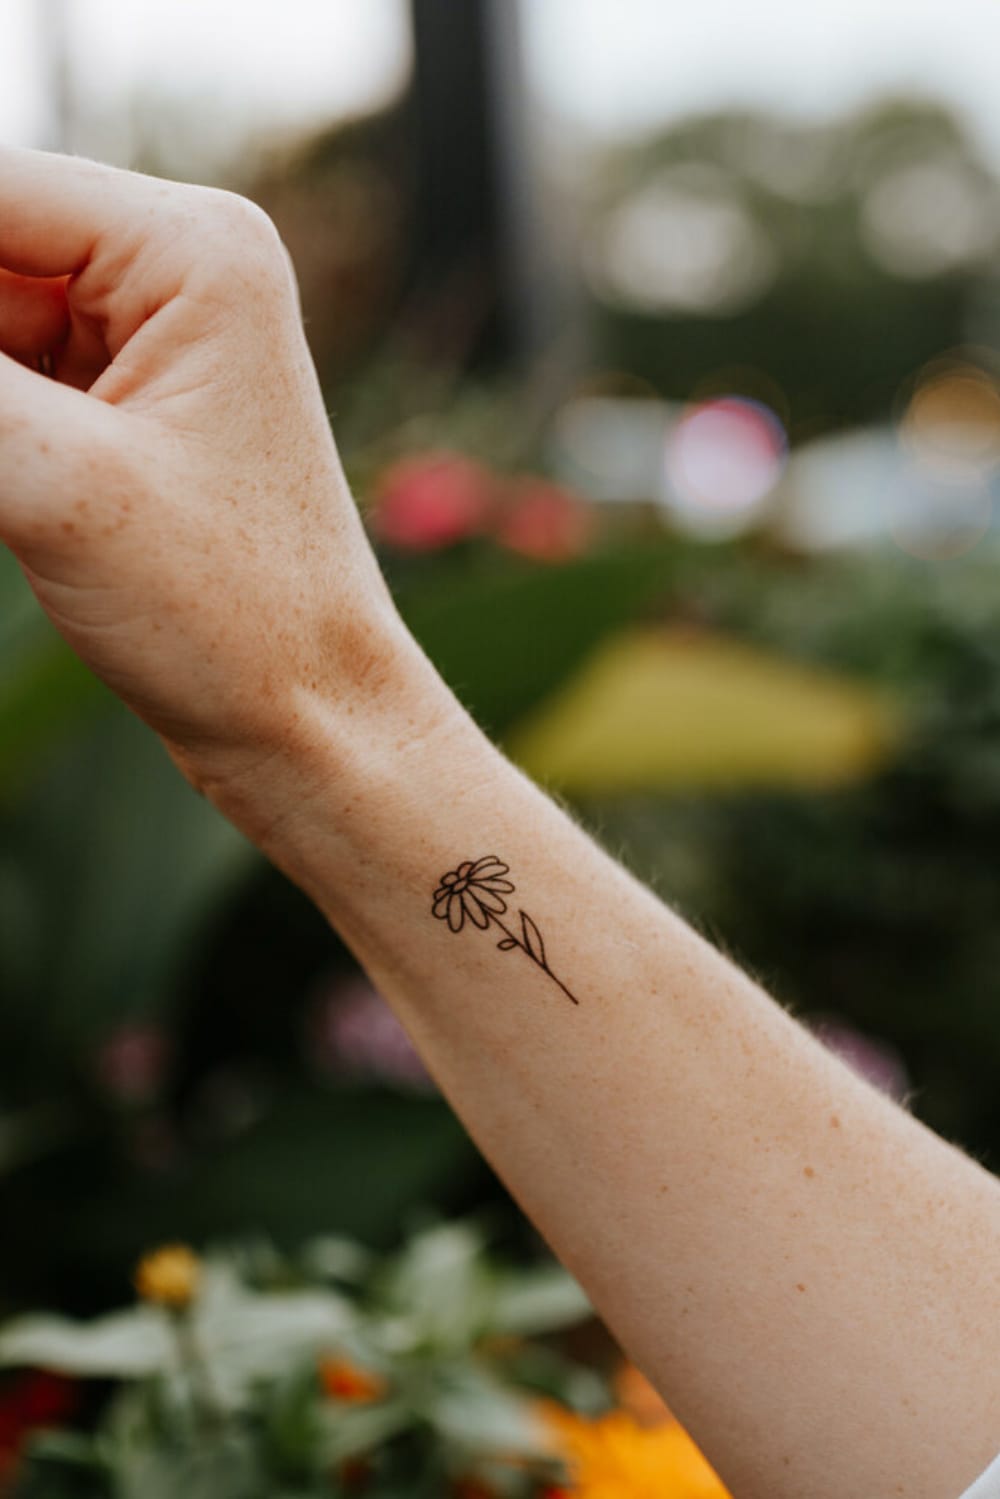 Small Daisy tattoo